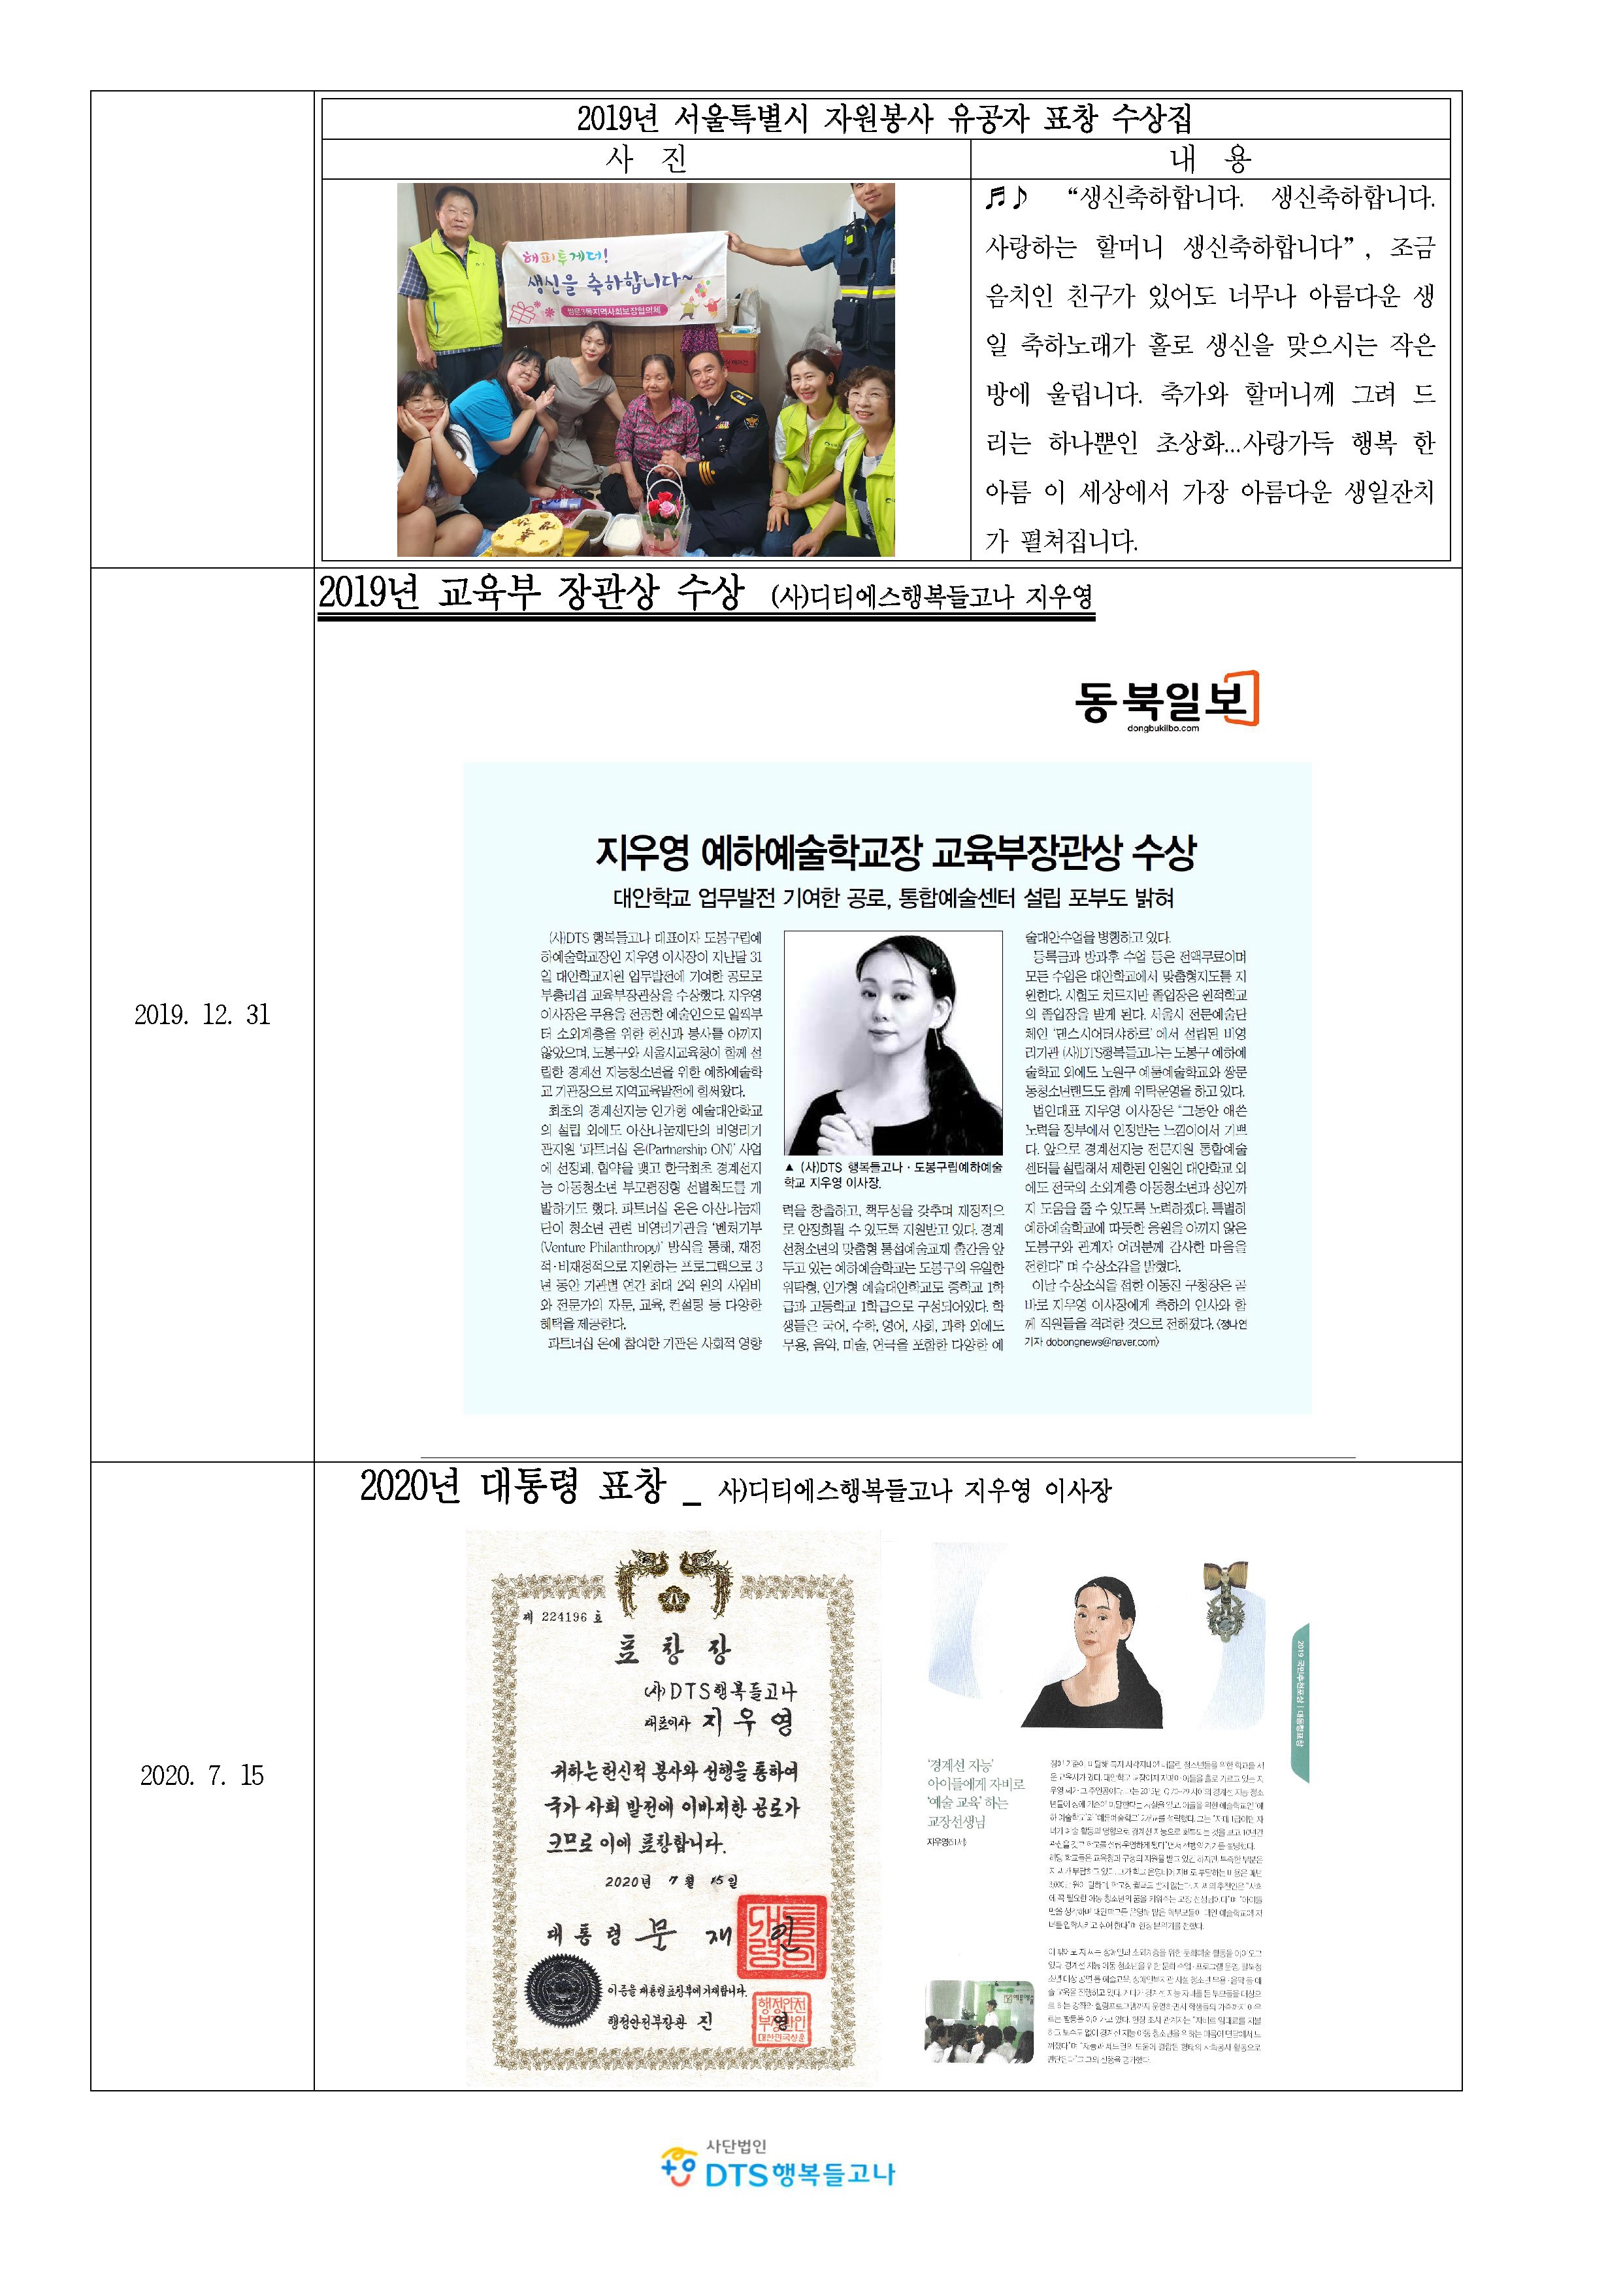 2020_ 사단법인 DTS행복들고나_소개(사회공헌)_페이지_6.jpg